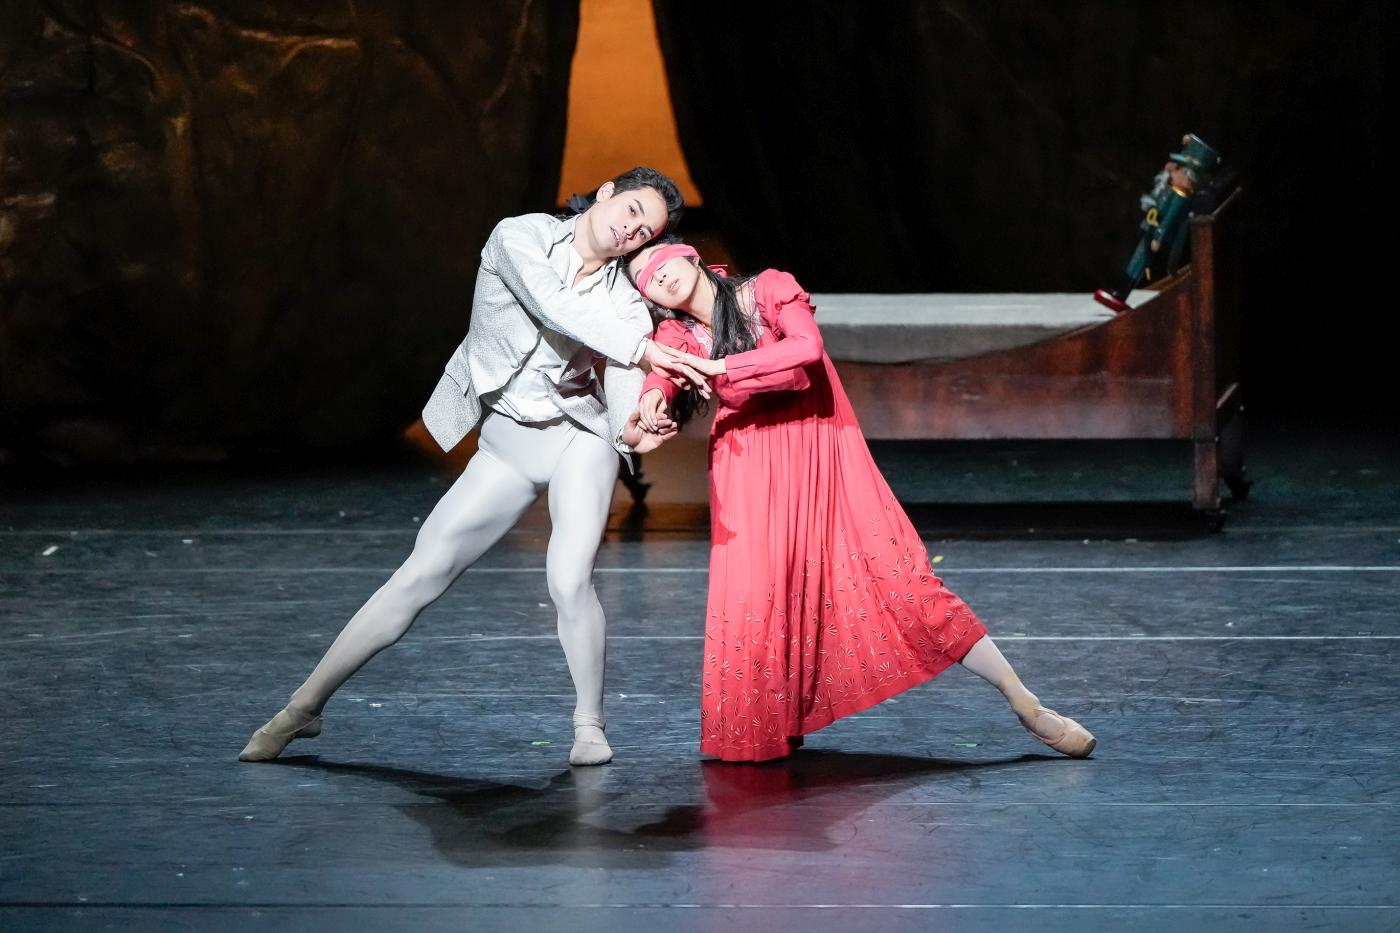 6. A.Soares da Silva (Nutcracker Prince) and A.Su (Clara), “The Nutcracker” by E.Clug, Stuttgart Ballet 2023 © R.Novitzky/Stuttgart Ballet